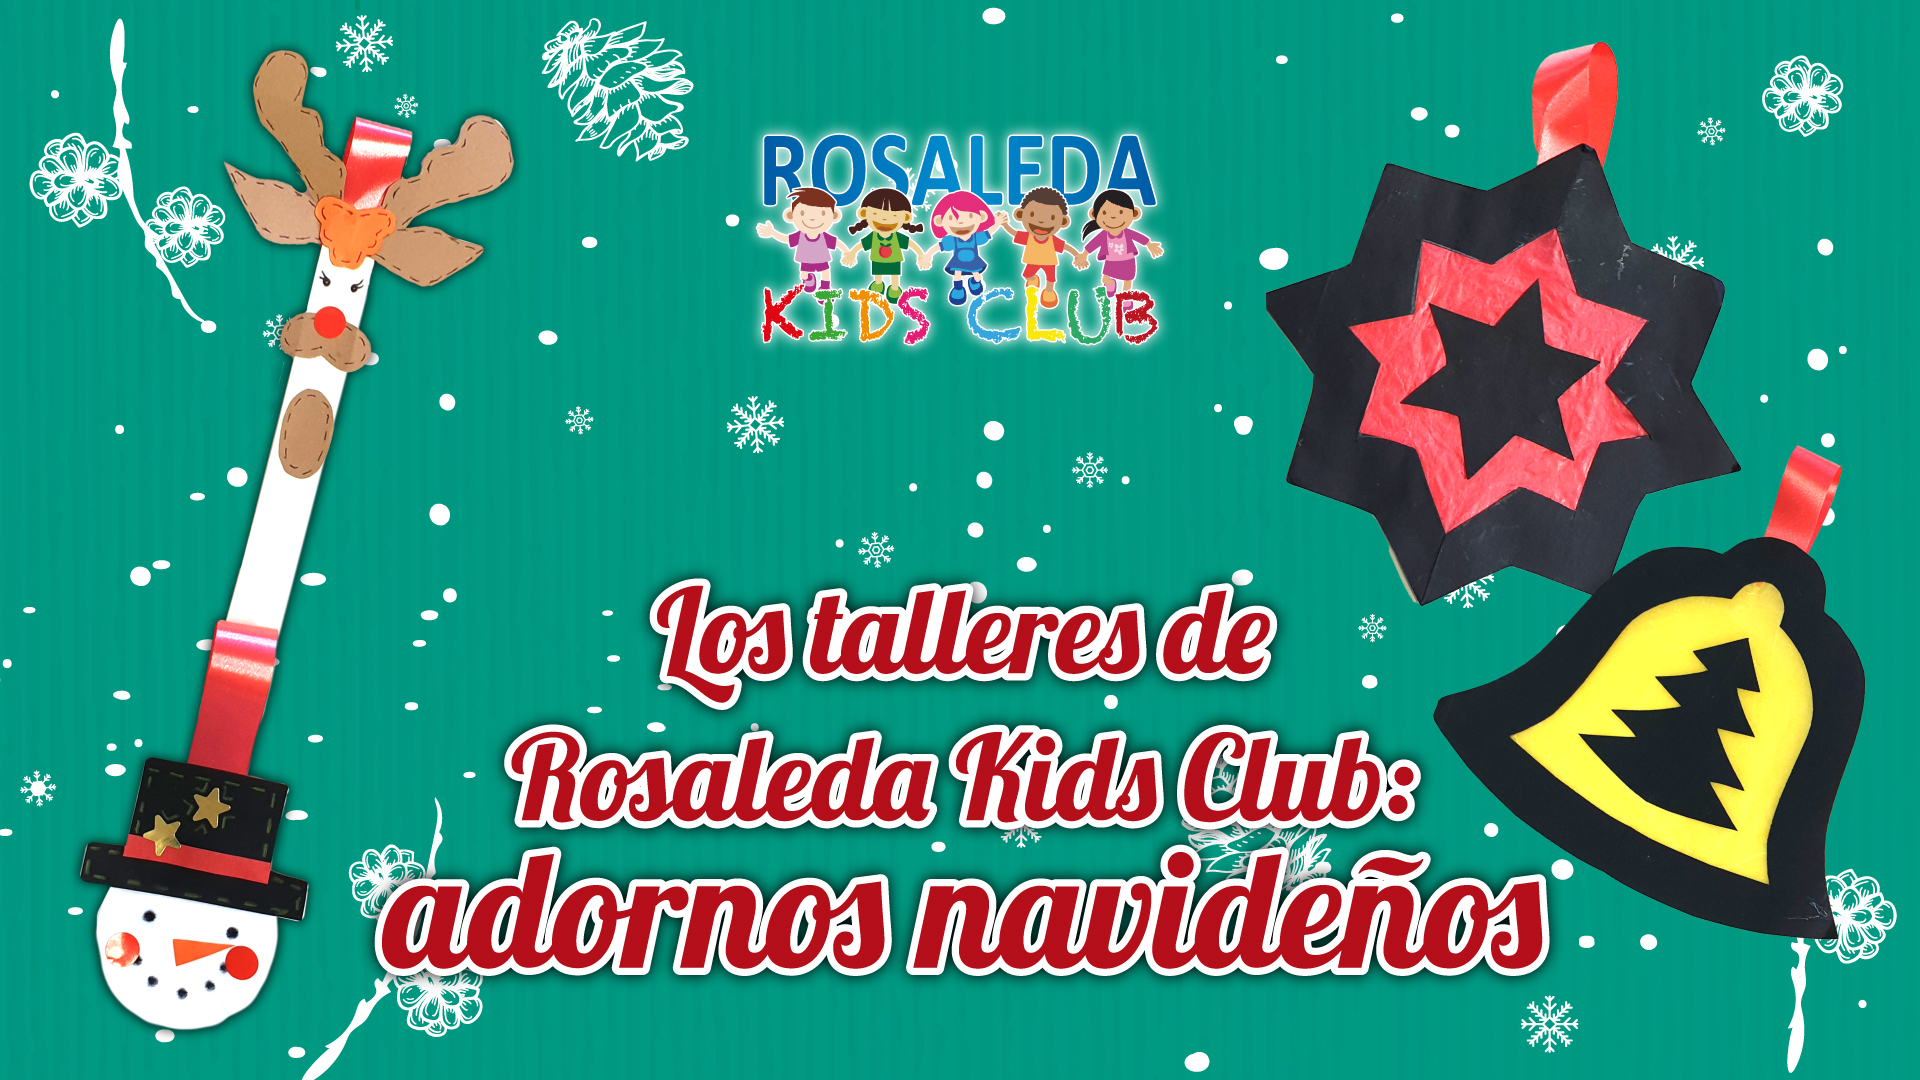 Los talleres de Rosaleda Kids Club: adornos navideños